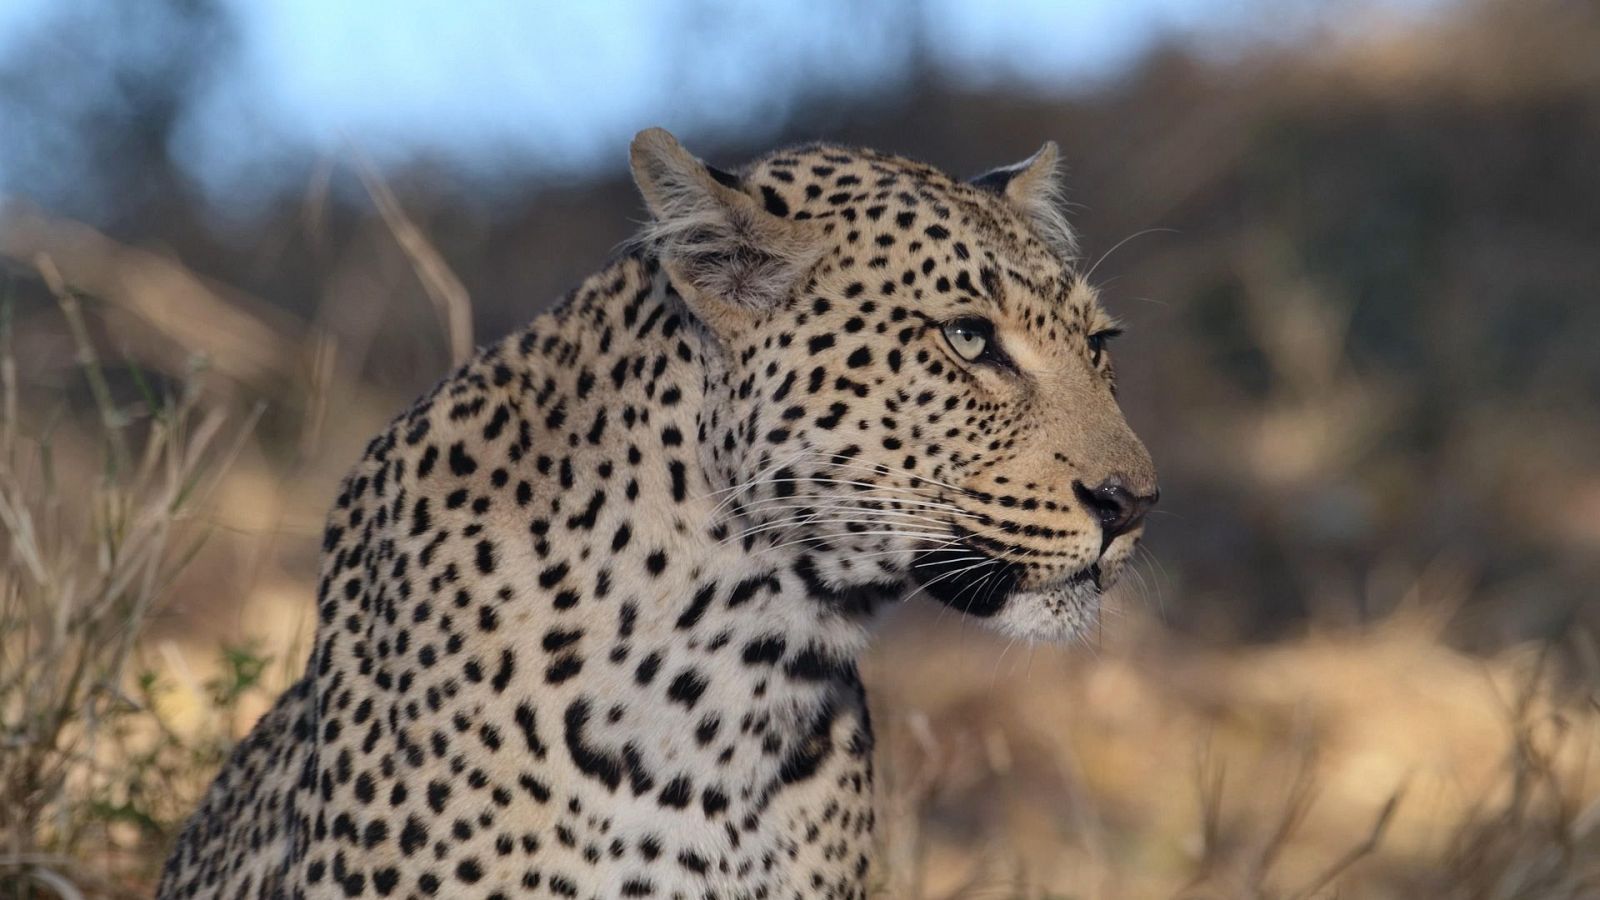 Somos documentales - La soledad del leopardo